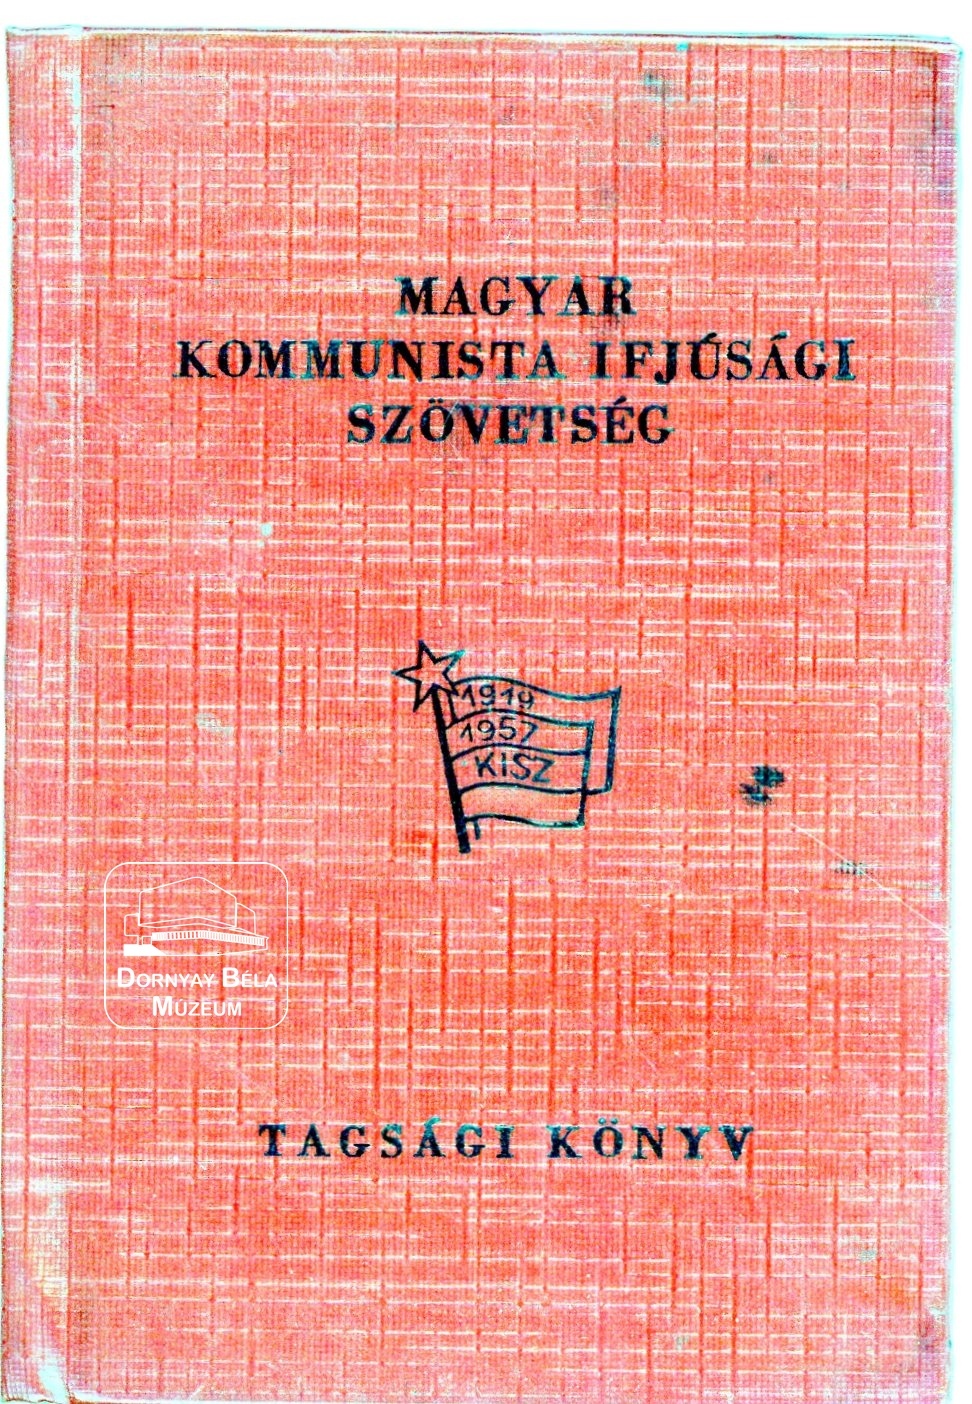 Buda Lászlóné KISZ tagsági könyve (Dornyay Béla Múzeum, Salgótarján CC BY-NC-SA)